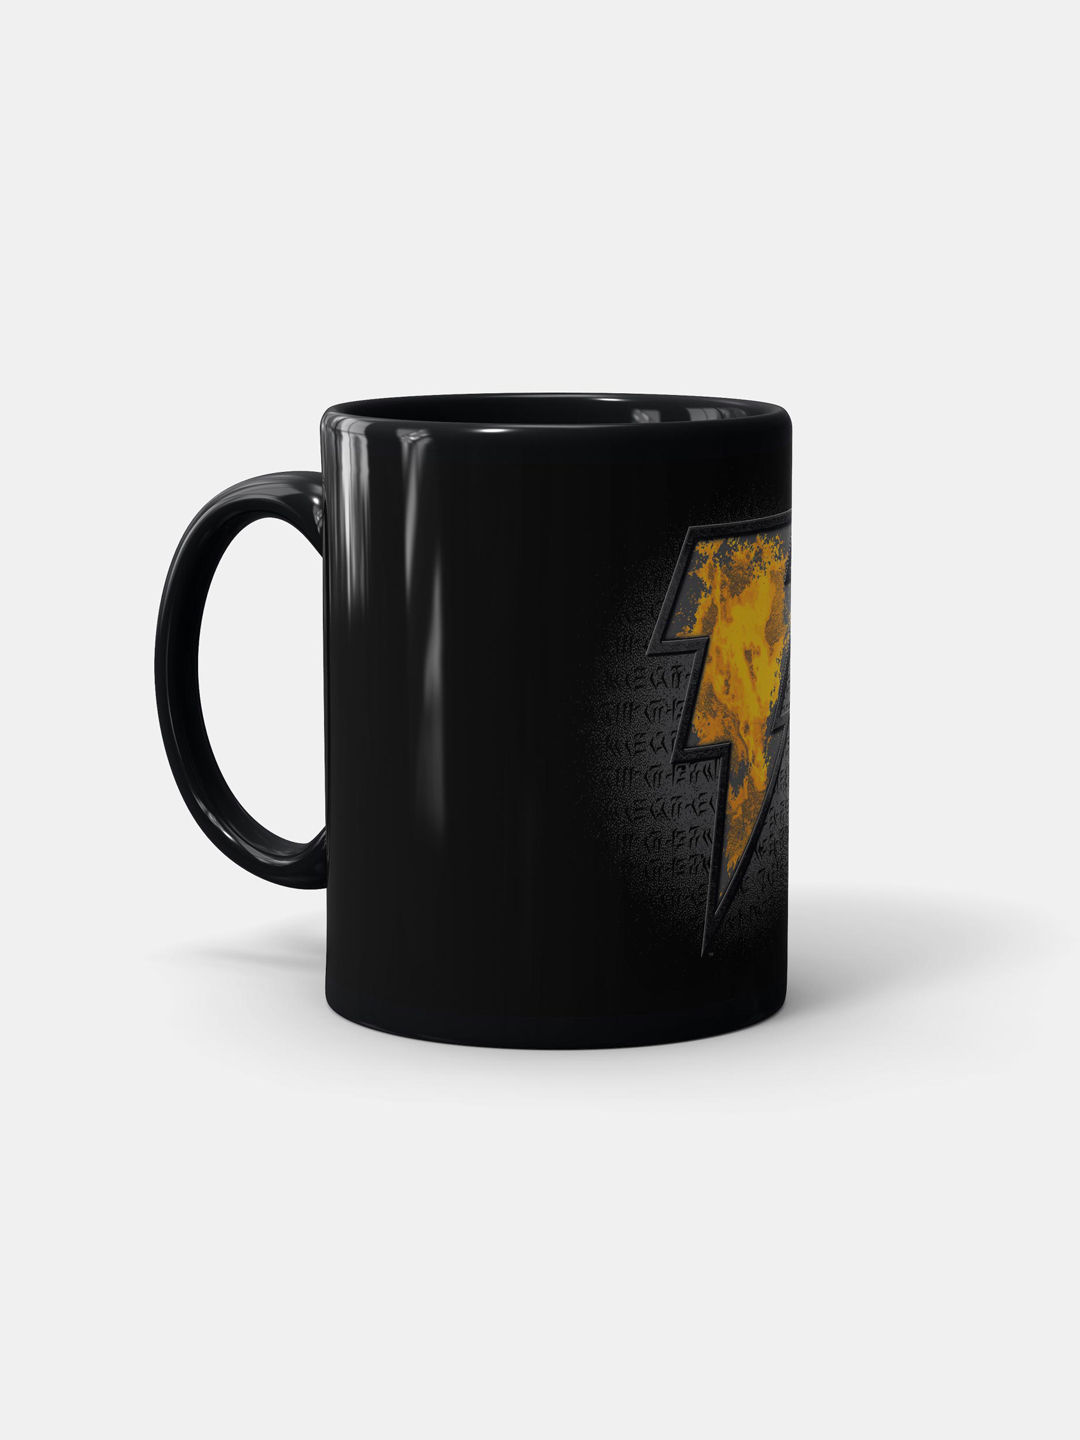 Buy Black Thunder - Coffee Mugs Black Coffee Mugs Online